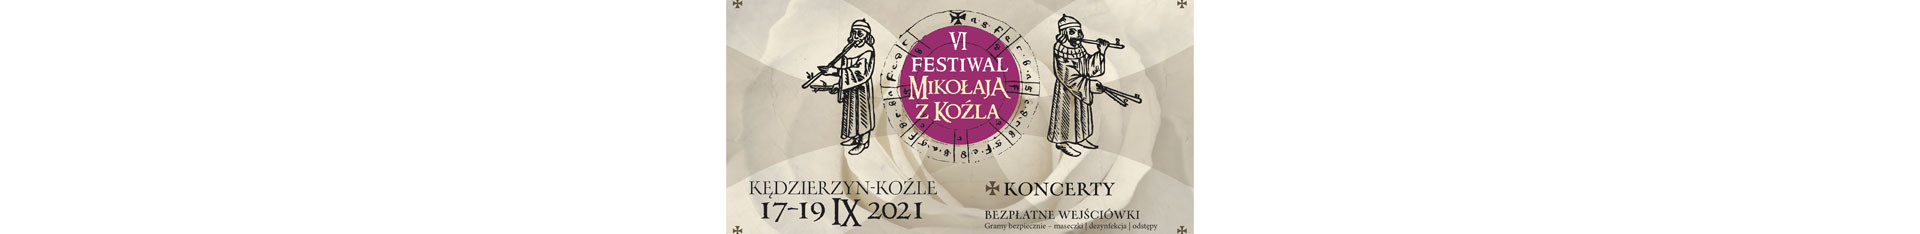 Festiwal Mikołaja z Koźla